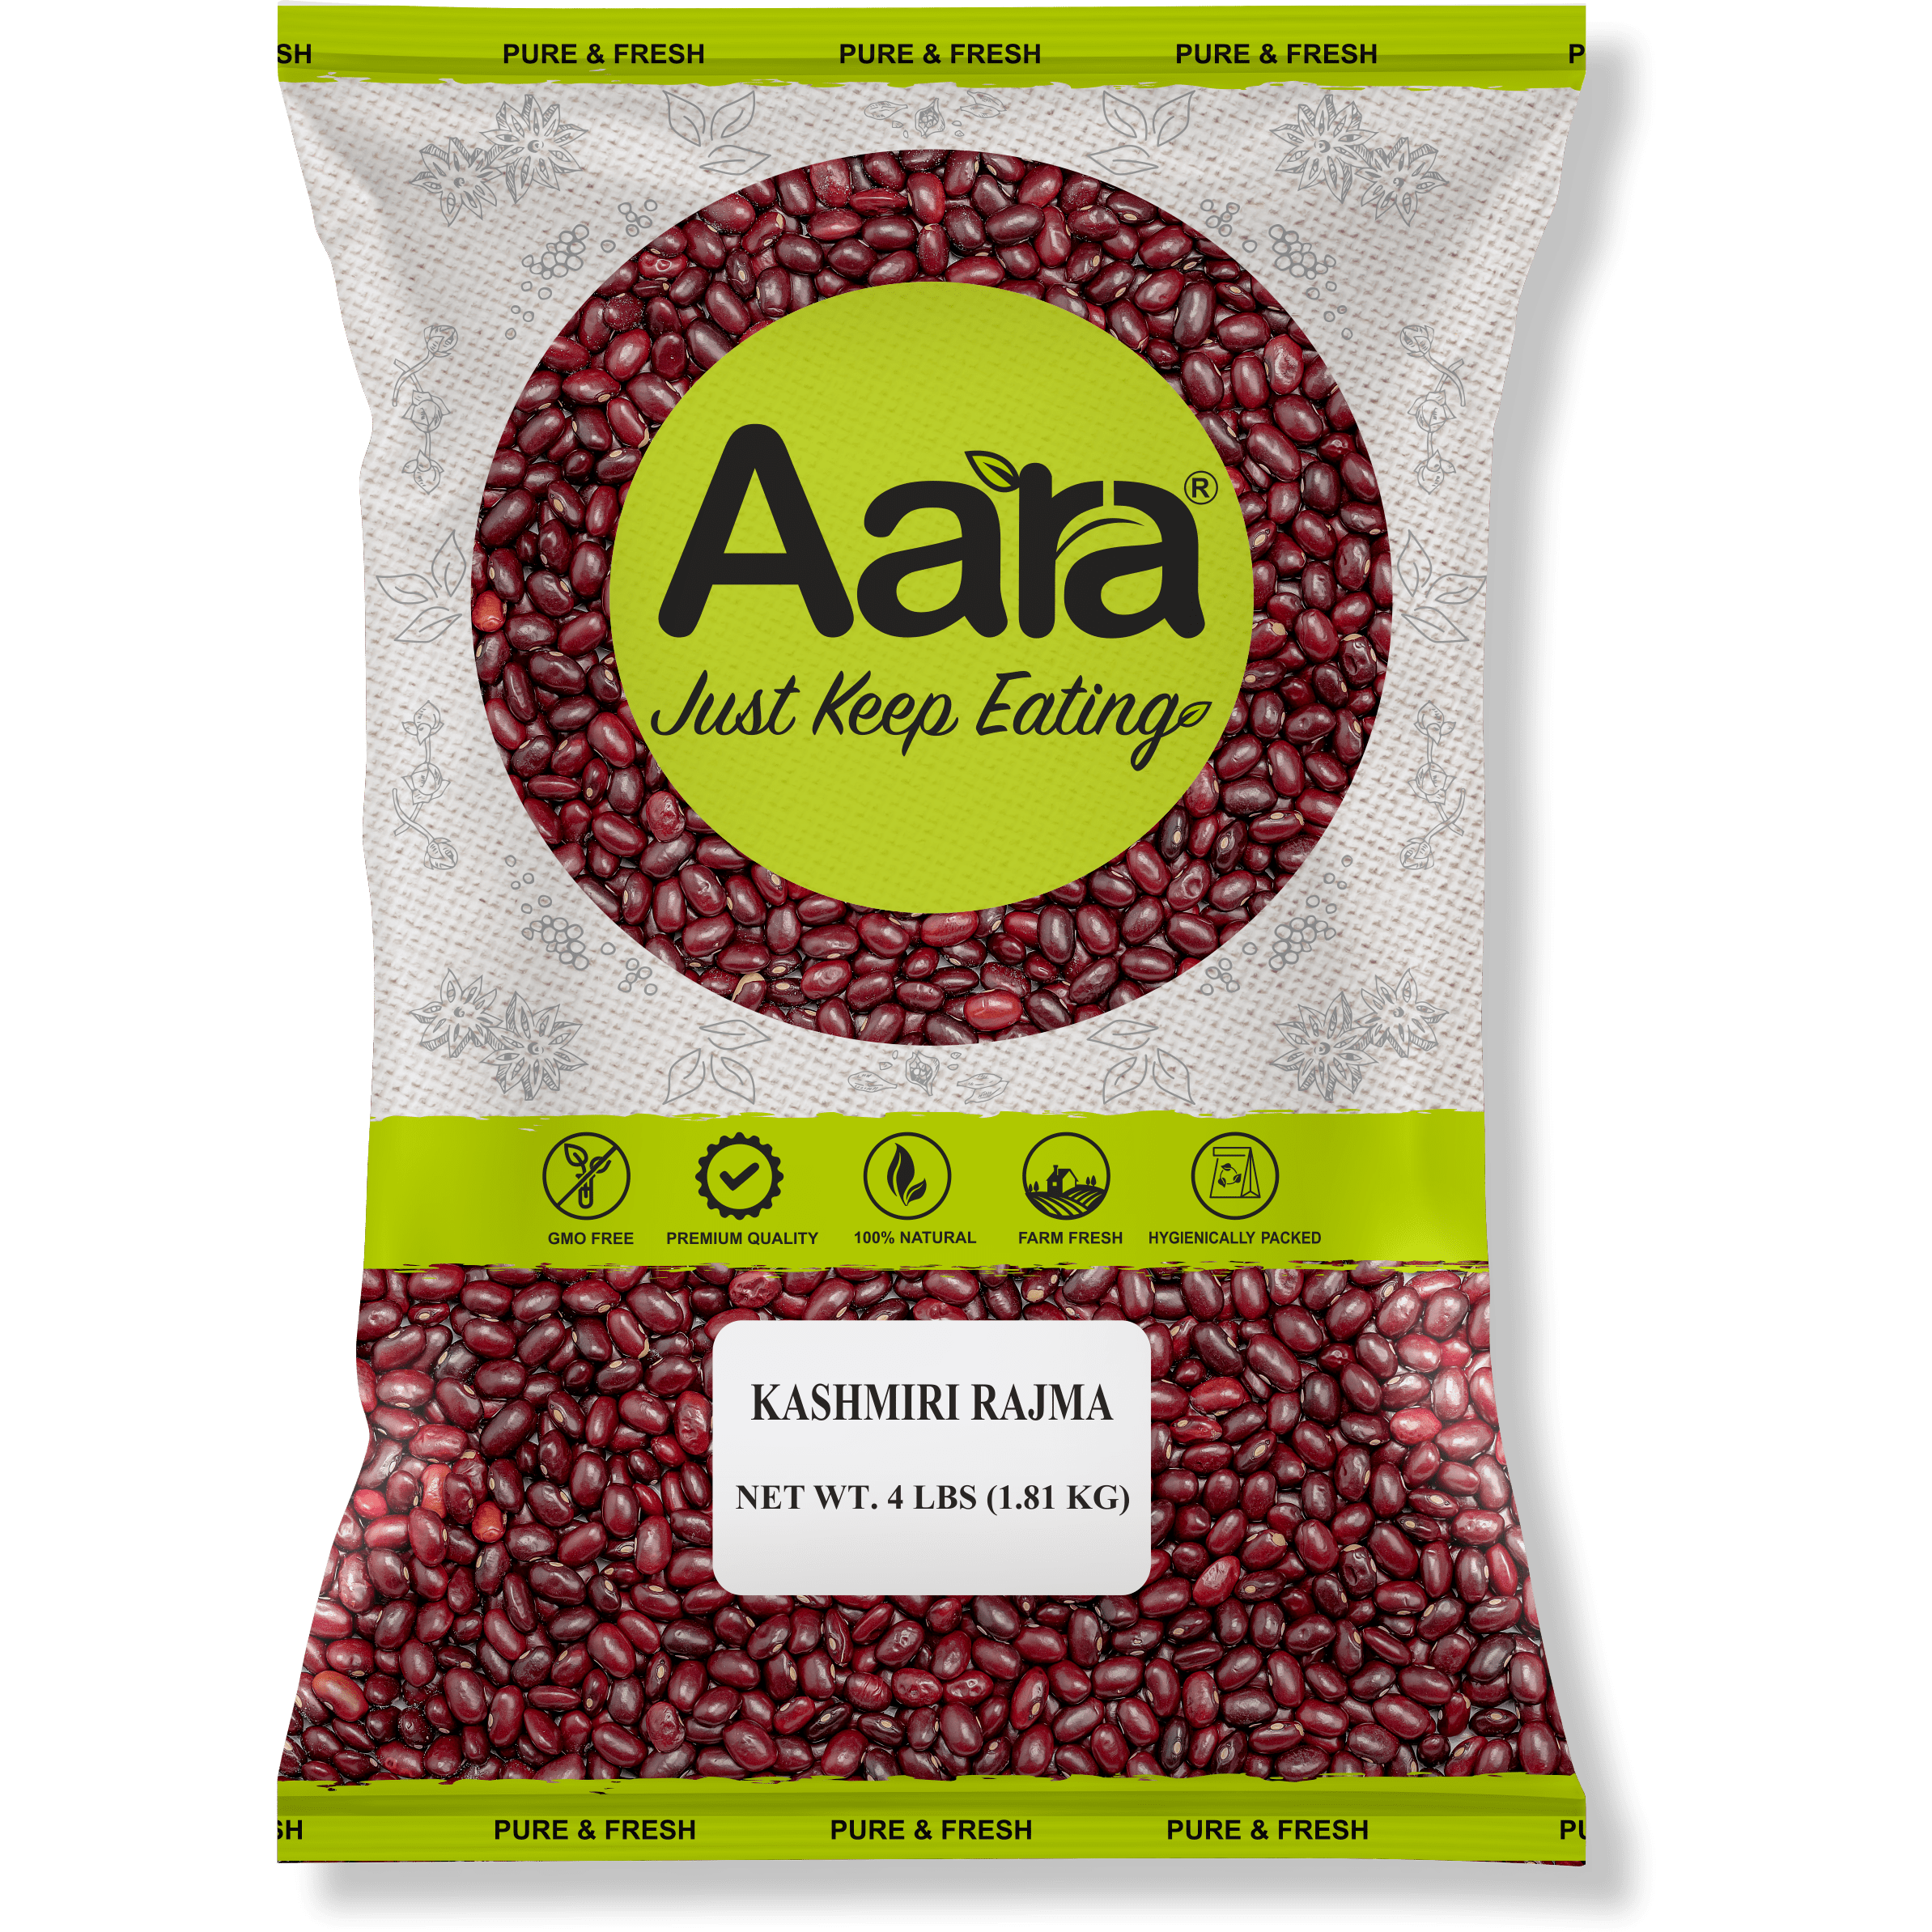 Aara Kashmiri Rajama Beans - 4 lb